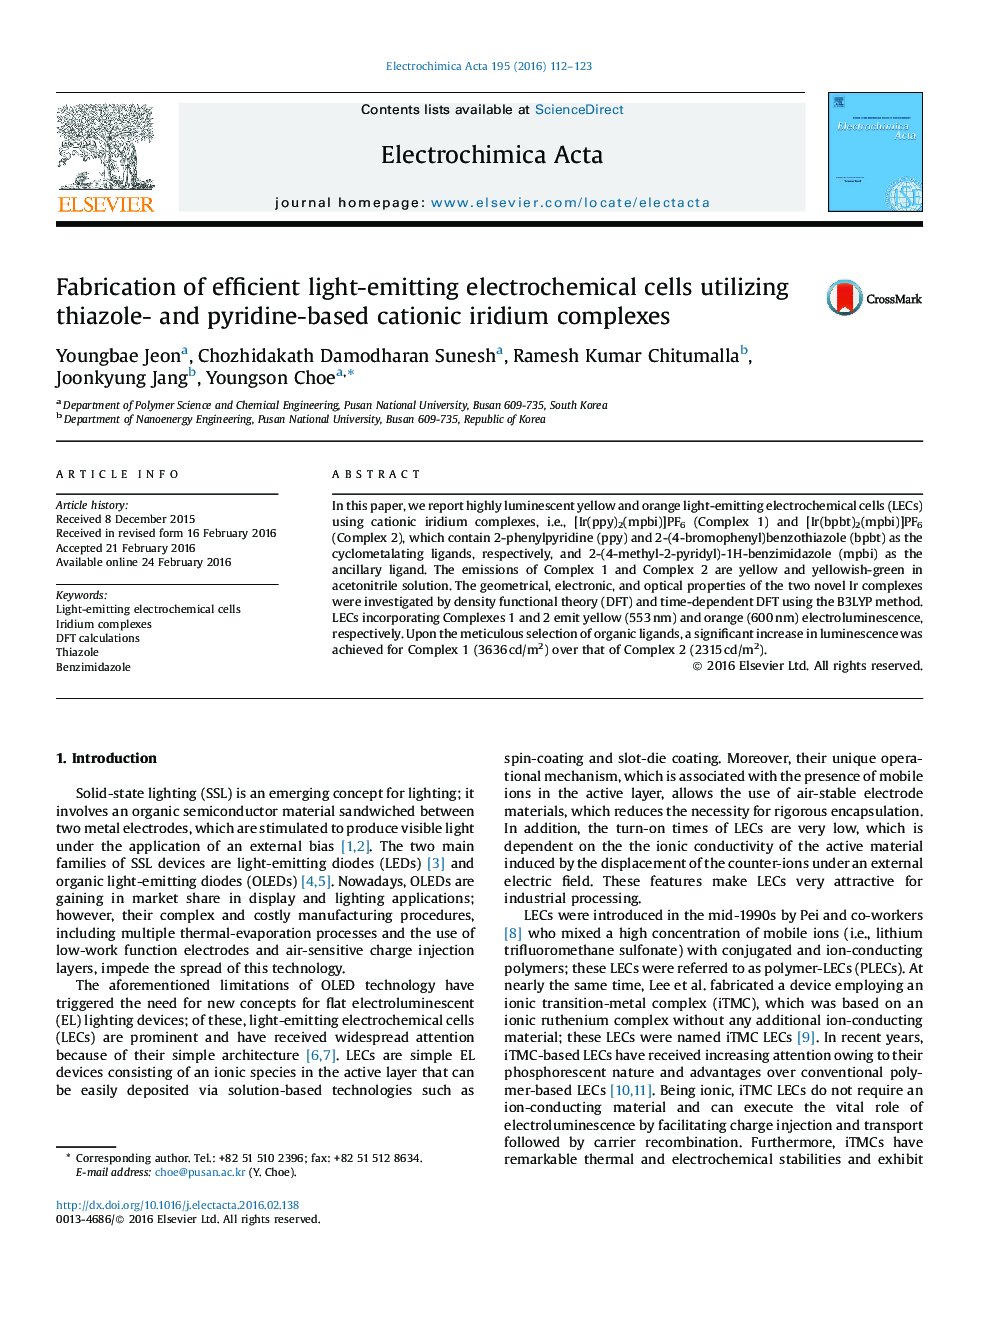 تولید سلولهای الکتروشیمیایی تابشده با کارآیی نور با استفاده از مجتمع های ایریدیوم کاتیونی مبتنی بر تیازول و پییرین 